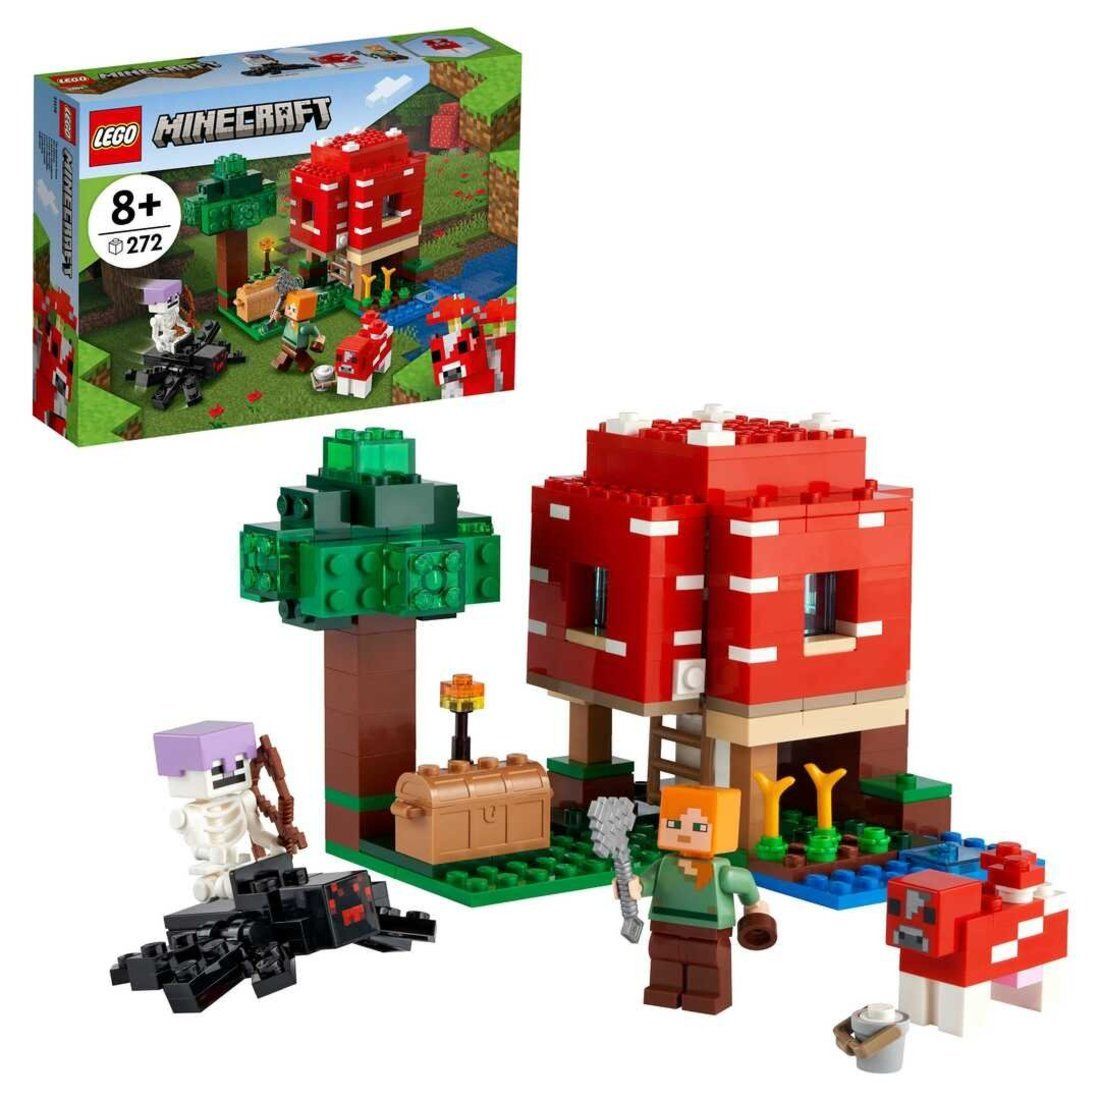 Констр-р LEGO Minecraft Грибной дом